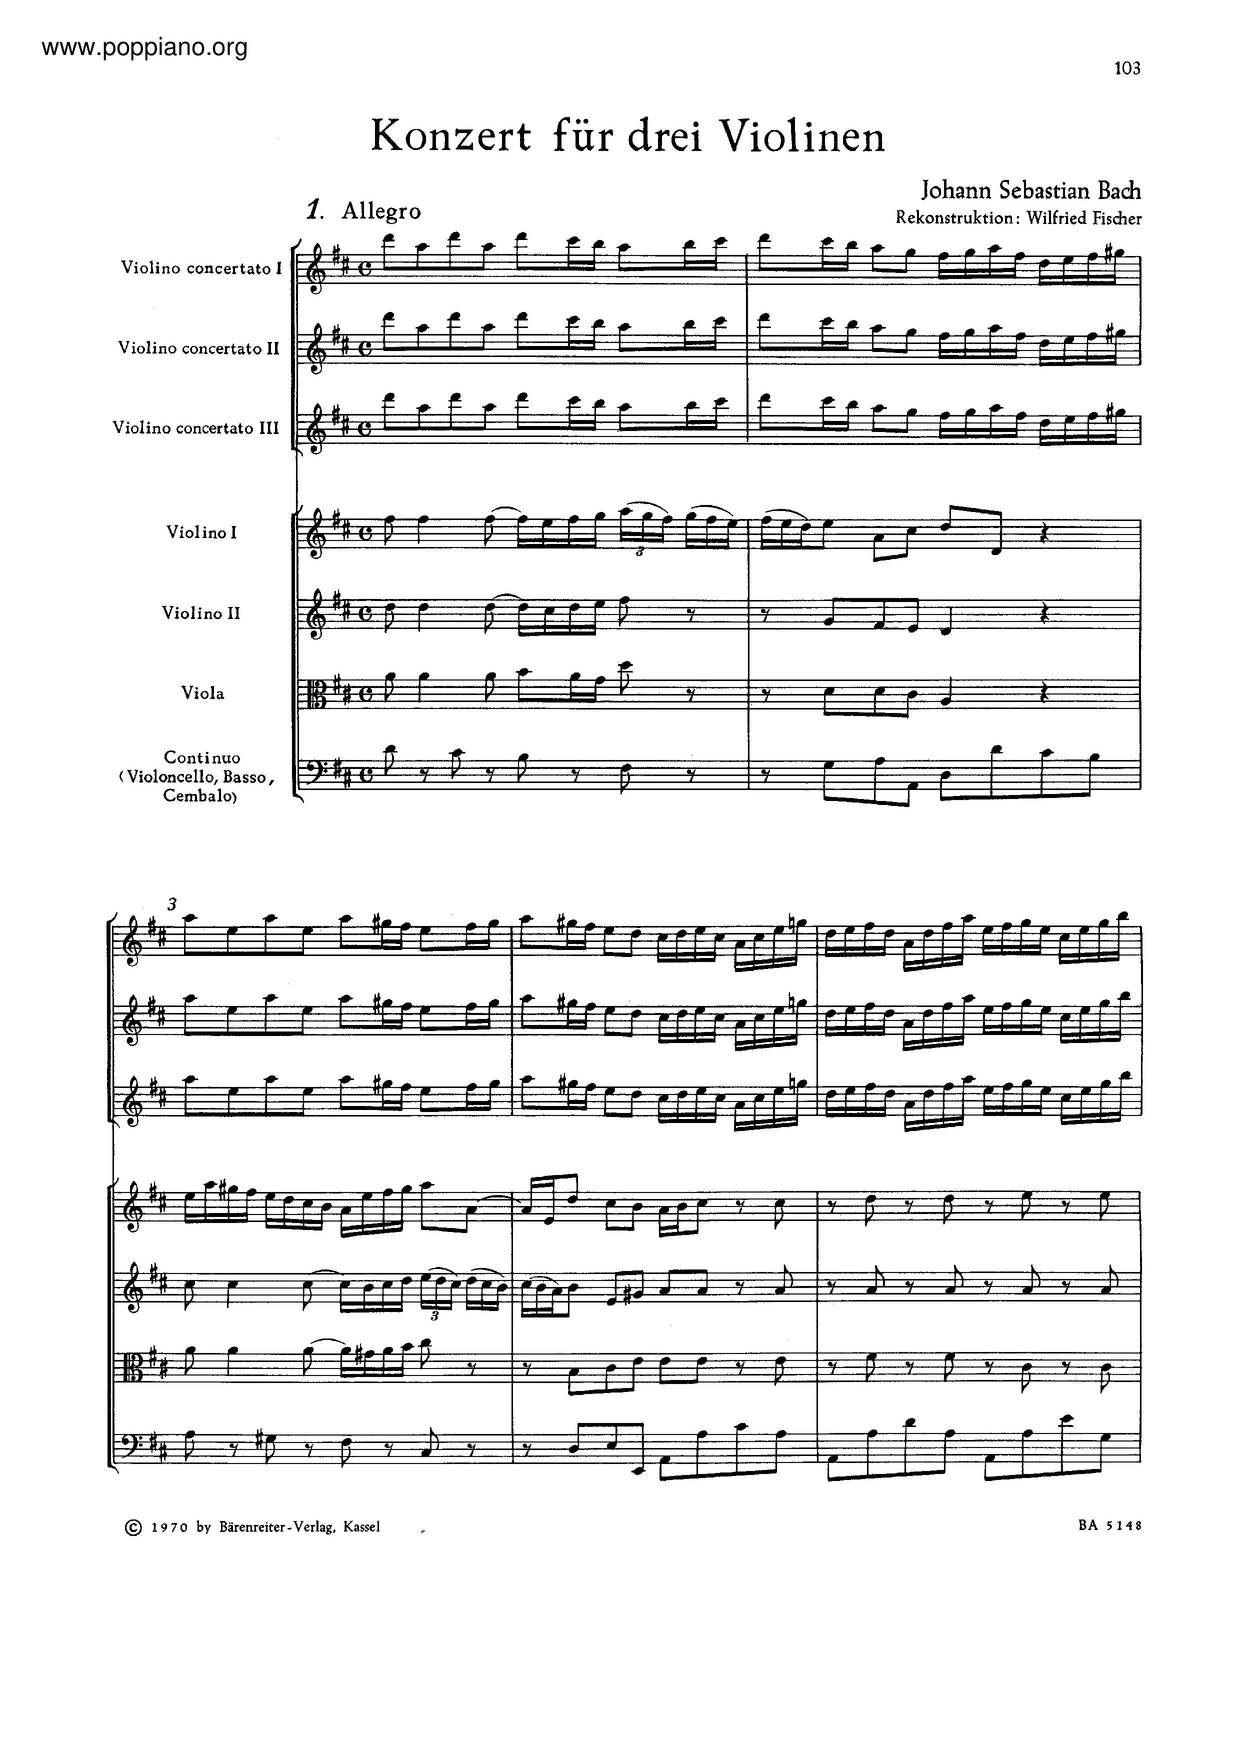 Concerto For 3 Violins In D Major, BWV 1064Rピアノ譜